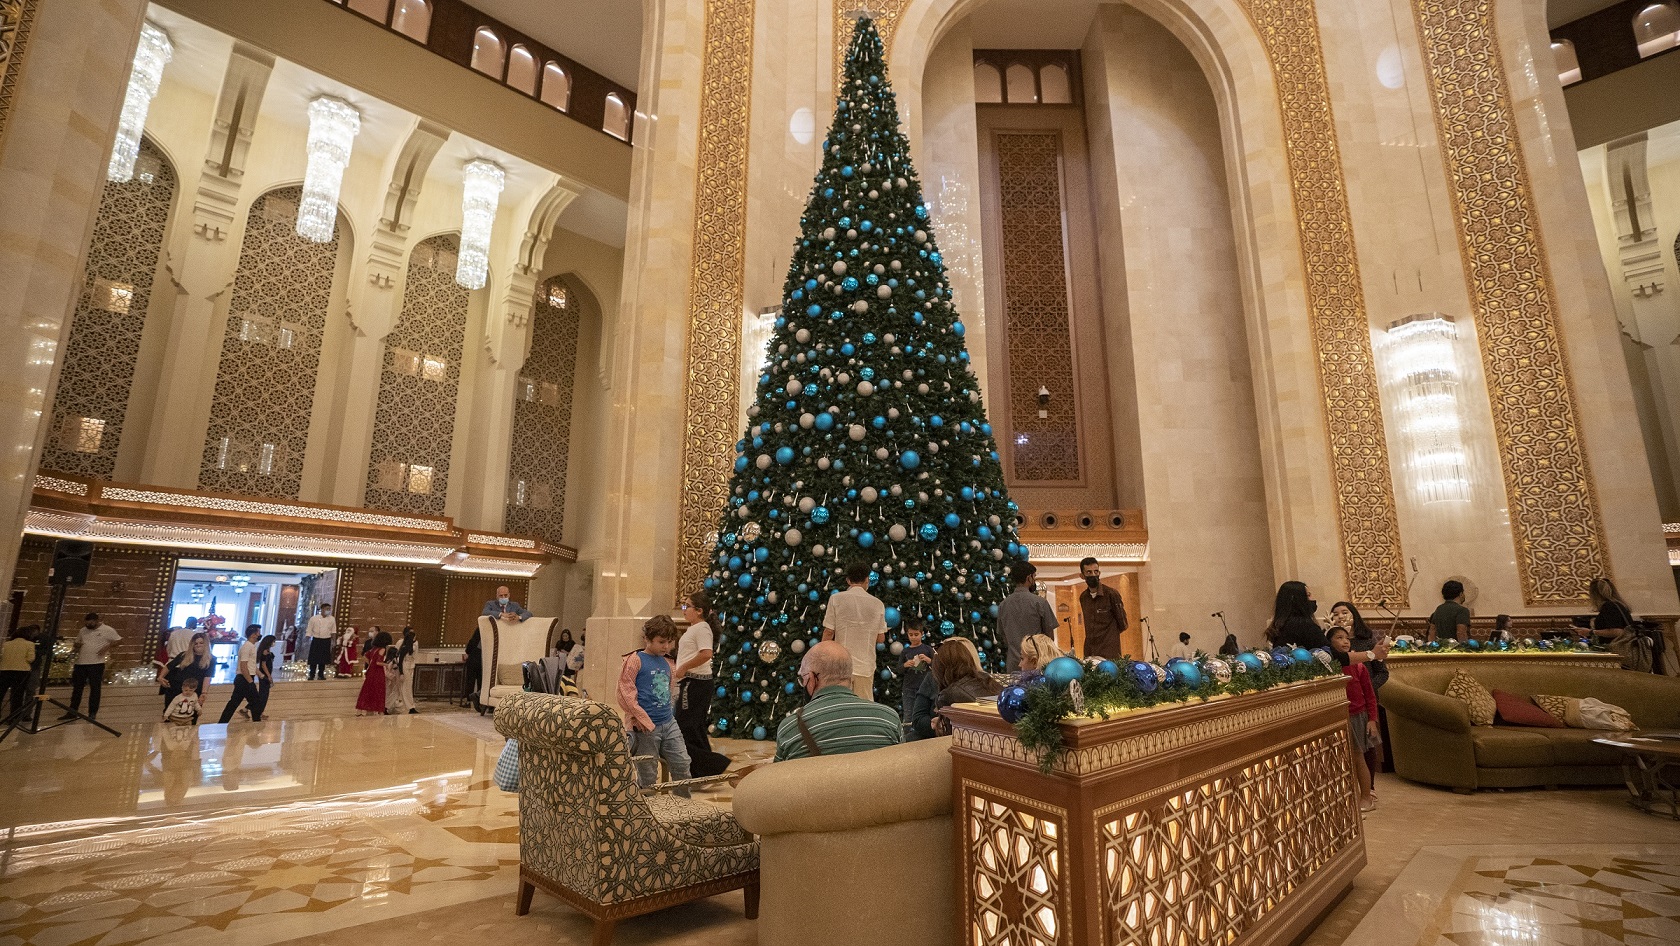 عروض قصر البستان فندق الريتز- كارلتون عمان إحتفالاً براس السنة 2022